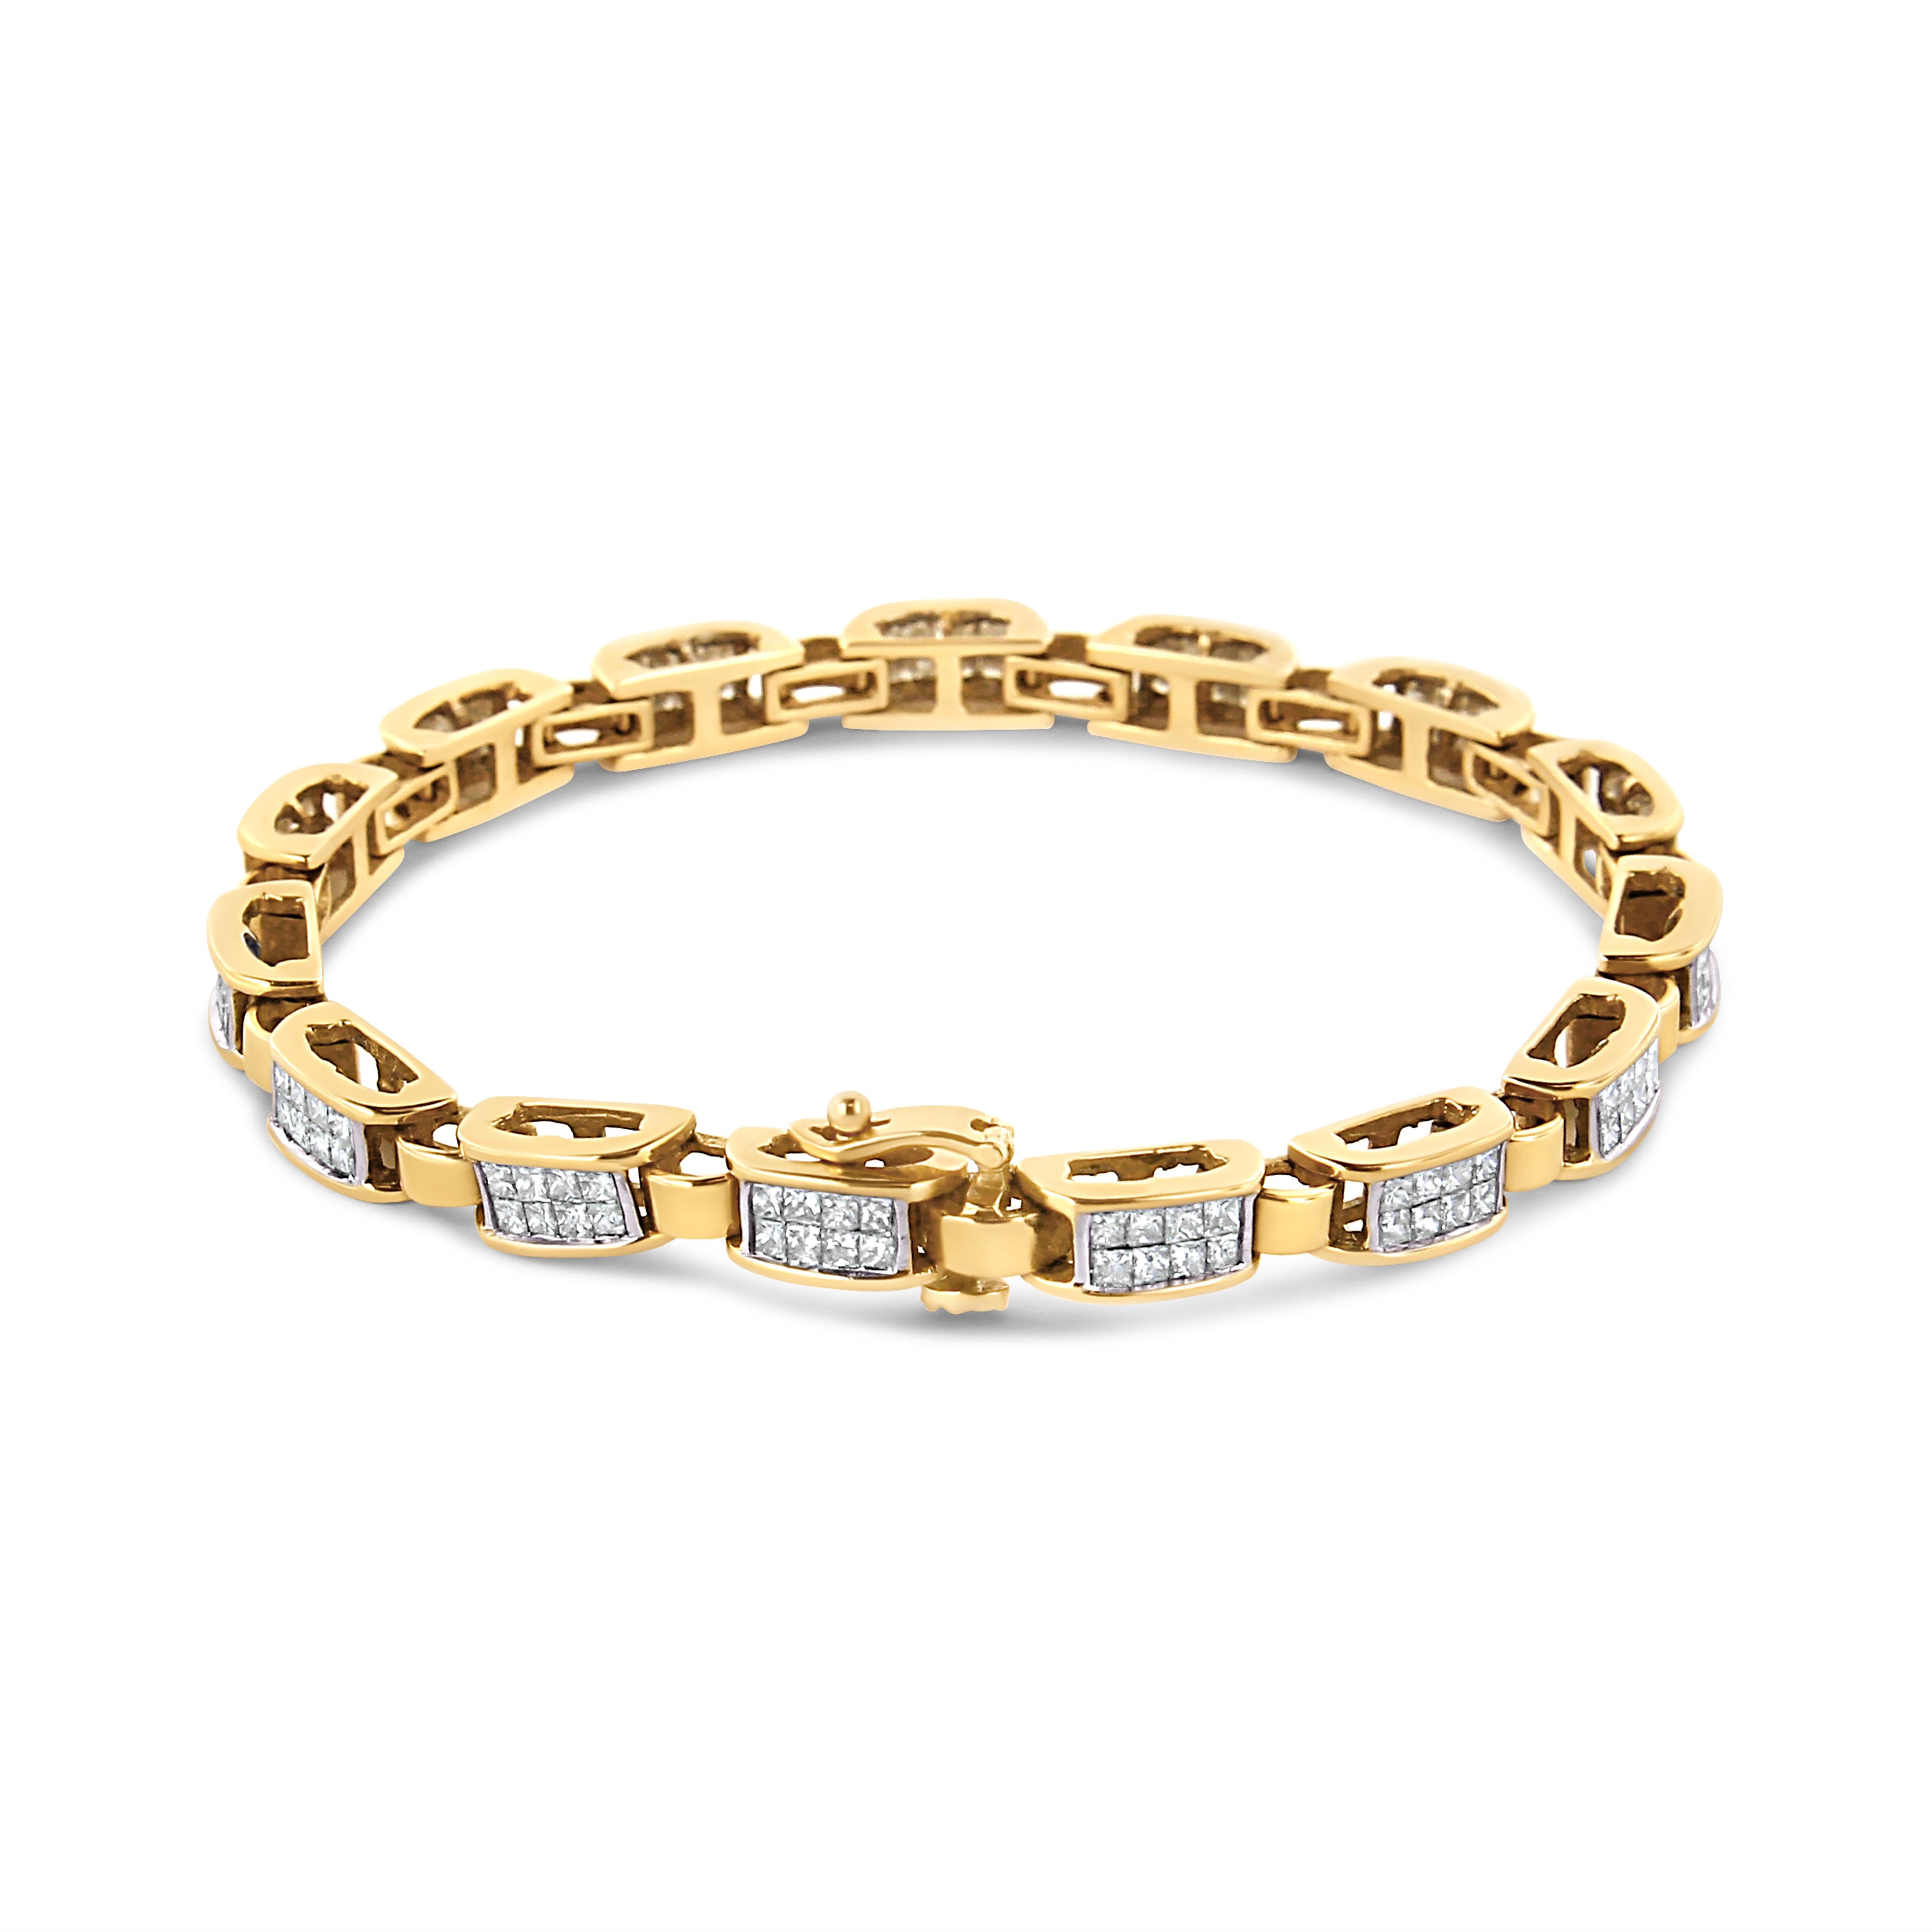 Dieses Gliederarmband mit geometrischem Muster ist ein zeitloses Stück. Kleine Gelbgoldbänder verbinden sich mit größeren Bändern, die mit acht Diamanten im Prinzessinnenschliff besetzt sind. 2 1/2ct TDW in Diamanten glänzen in diesem Design. Dieses